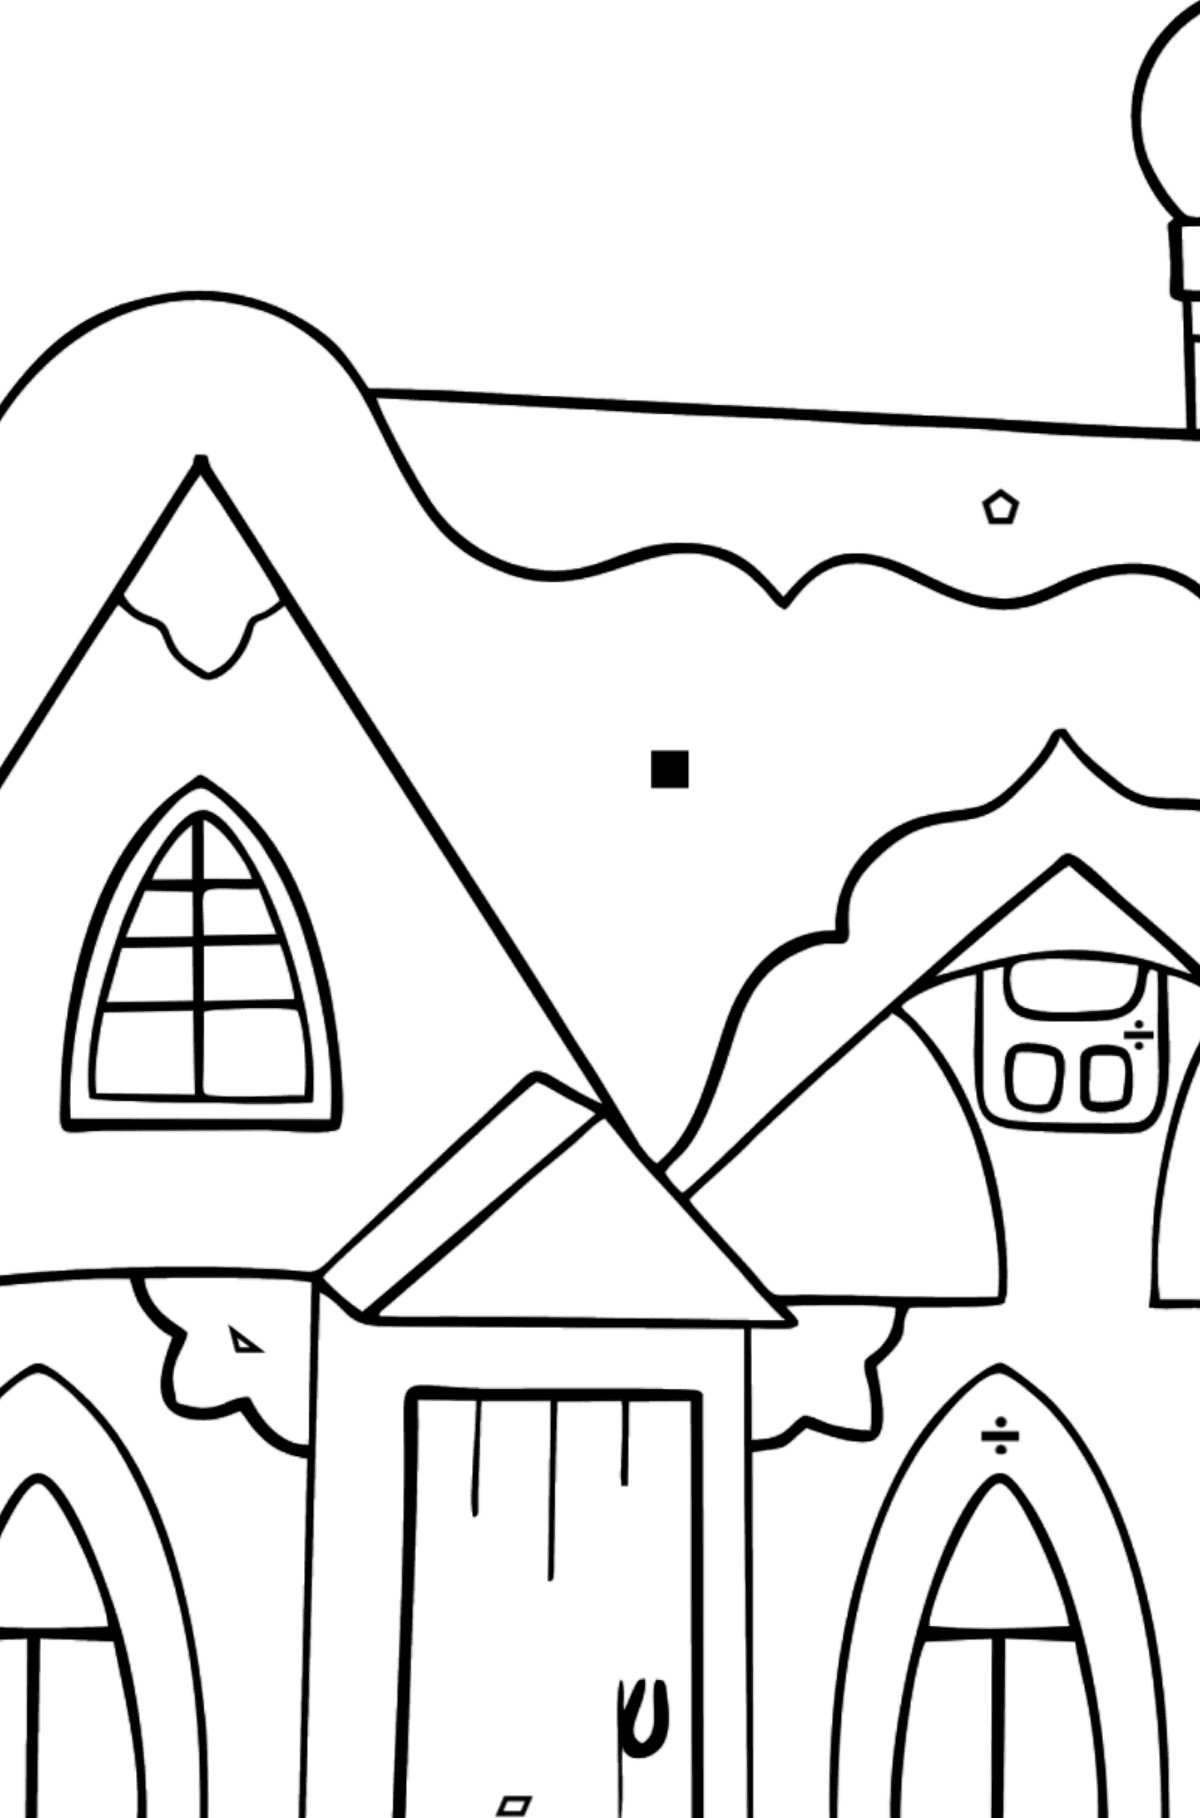 Tegning til fargelegging eventyrhus (enkelt) - Fargelegge etter symboler og geometriske former for barn